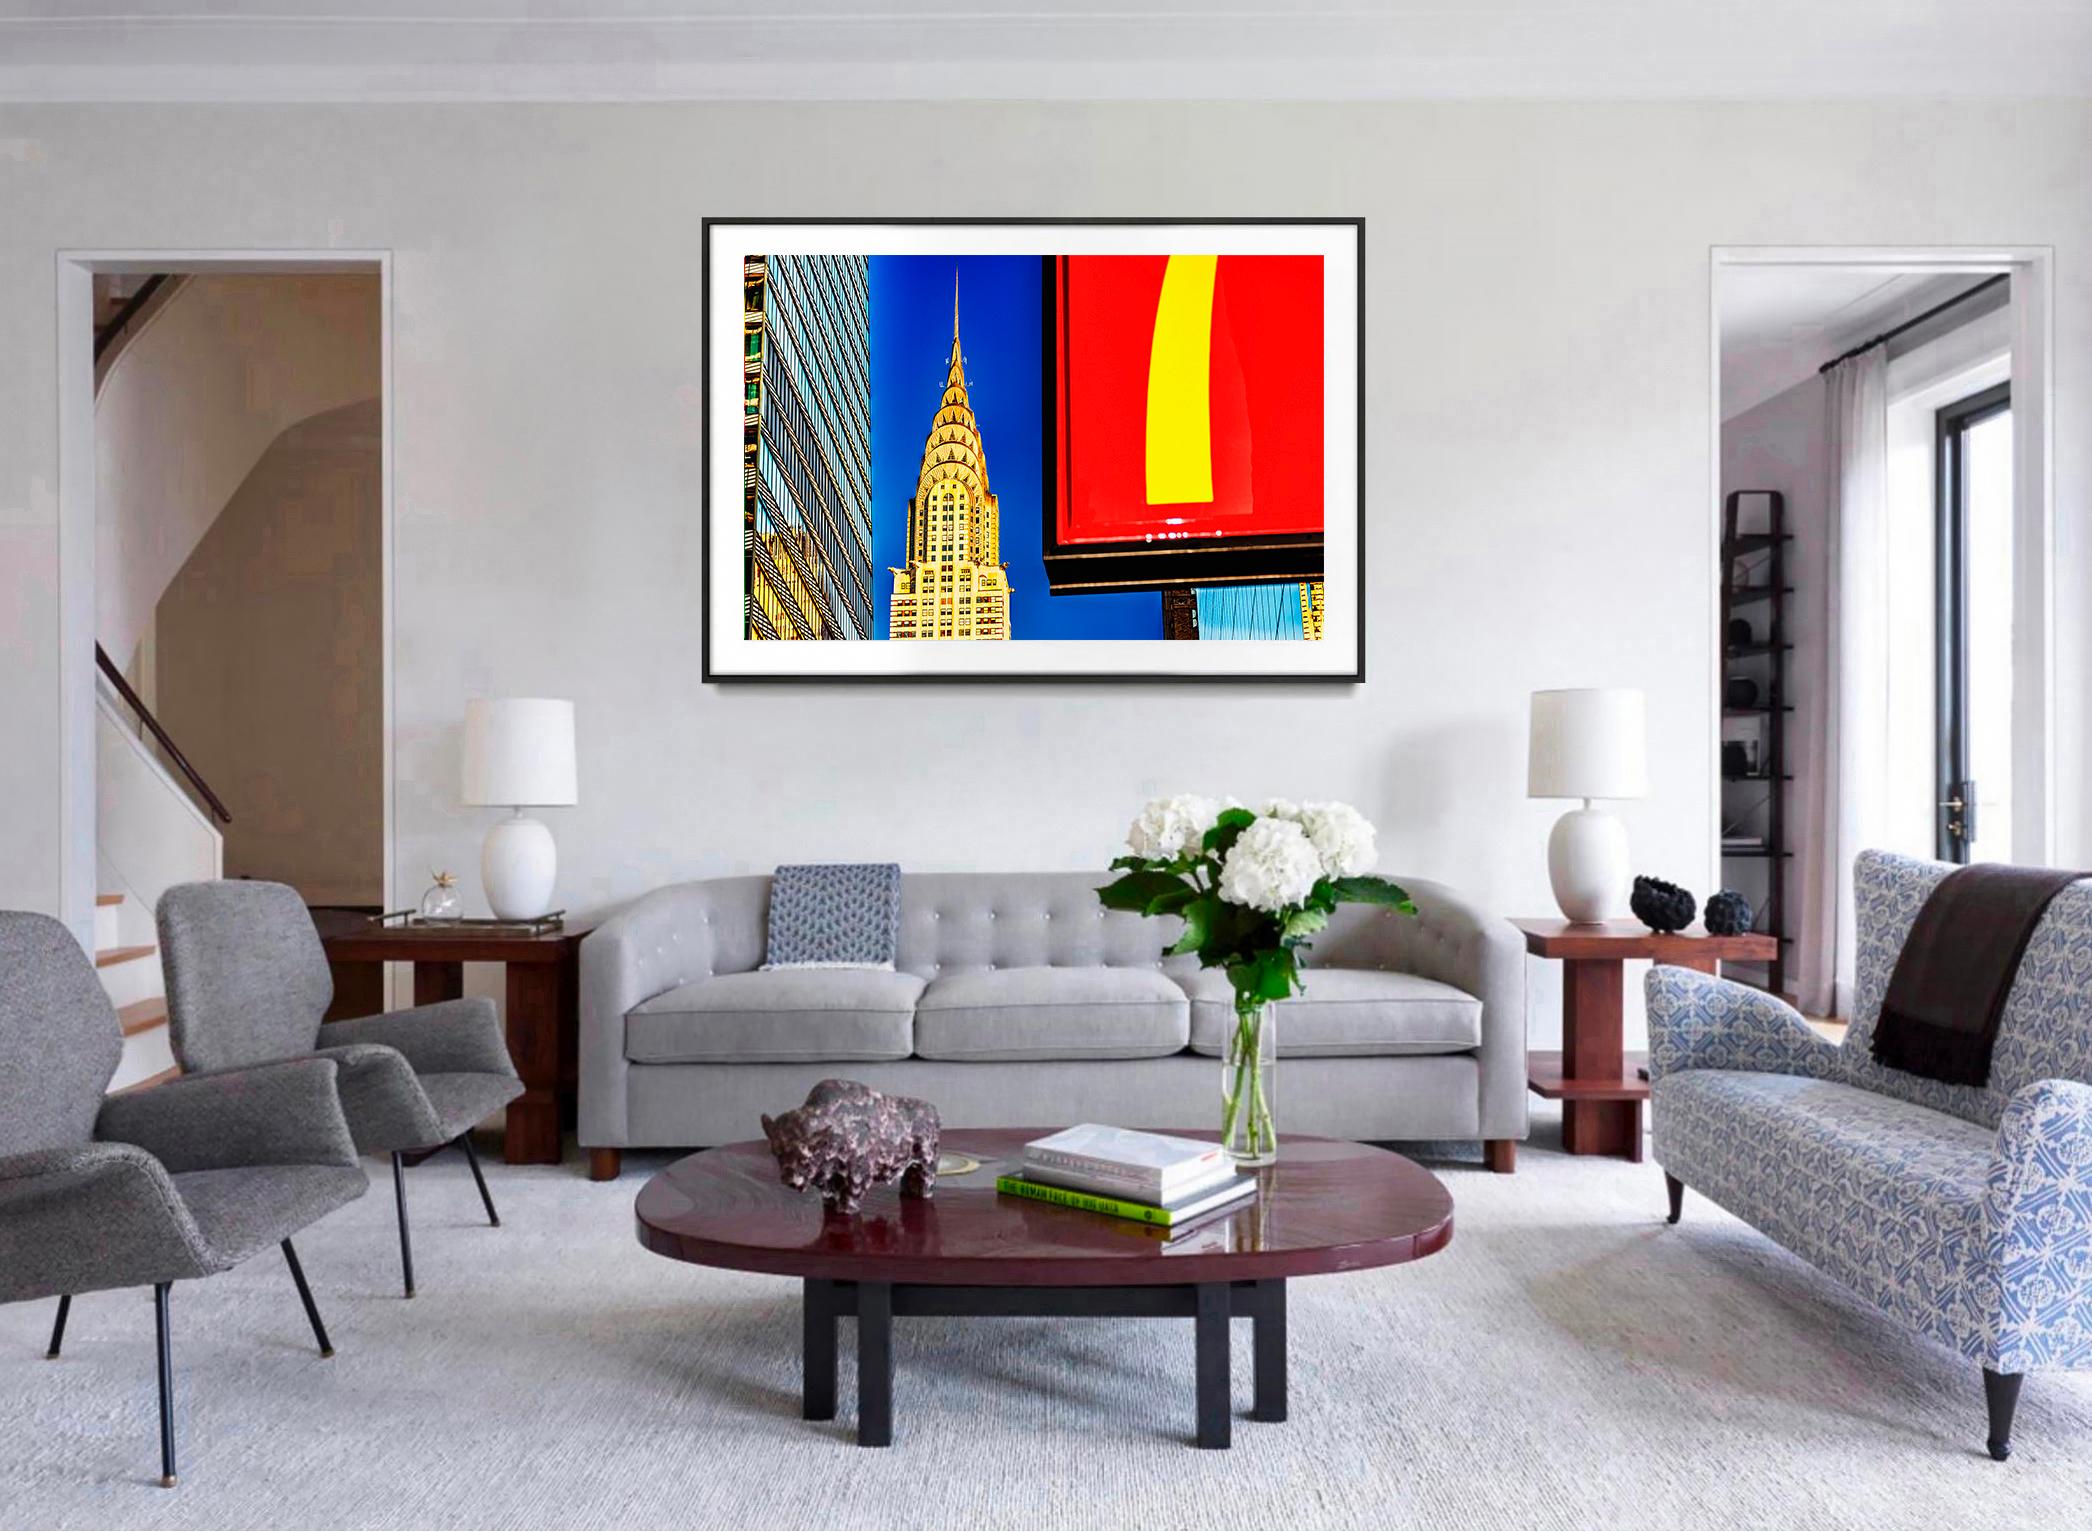 Seit 53 Jahren fotografiert Mithcell Funk die Art-déco-Schönheit des Chrysler Buildings. In diesem Werk rahmt Funk die ikonische Turmspitze zwischen zwei anderen geradlinigen Formen ein. Auf der linken Seite befindet sich ein typischer monochromer